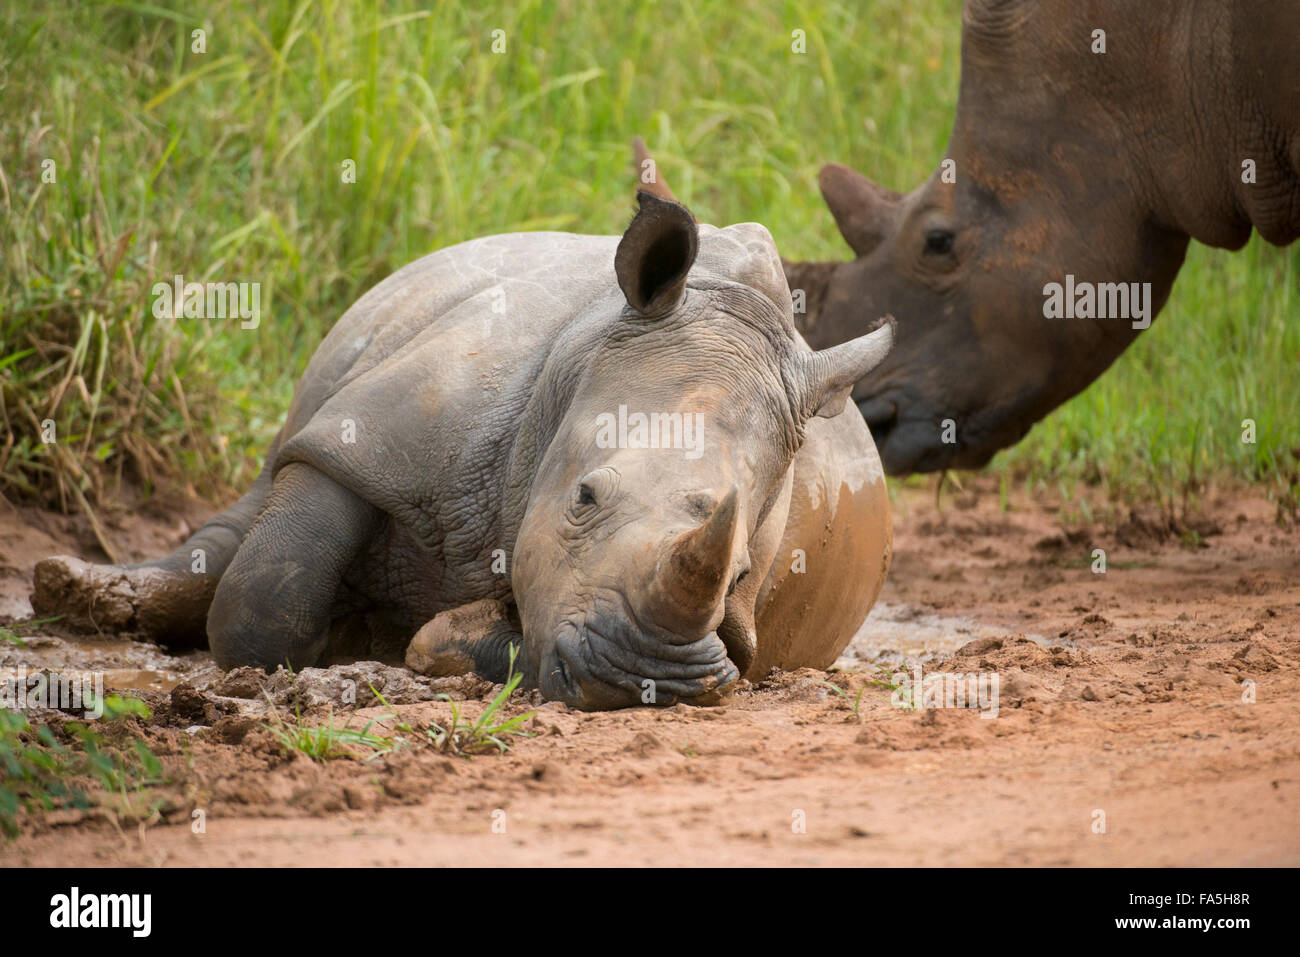 White rhinoceros with young taking a mud bath (Ceratotherium simum), Ziwa Rhino Sanctuary, Uganda Stock Photo